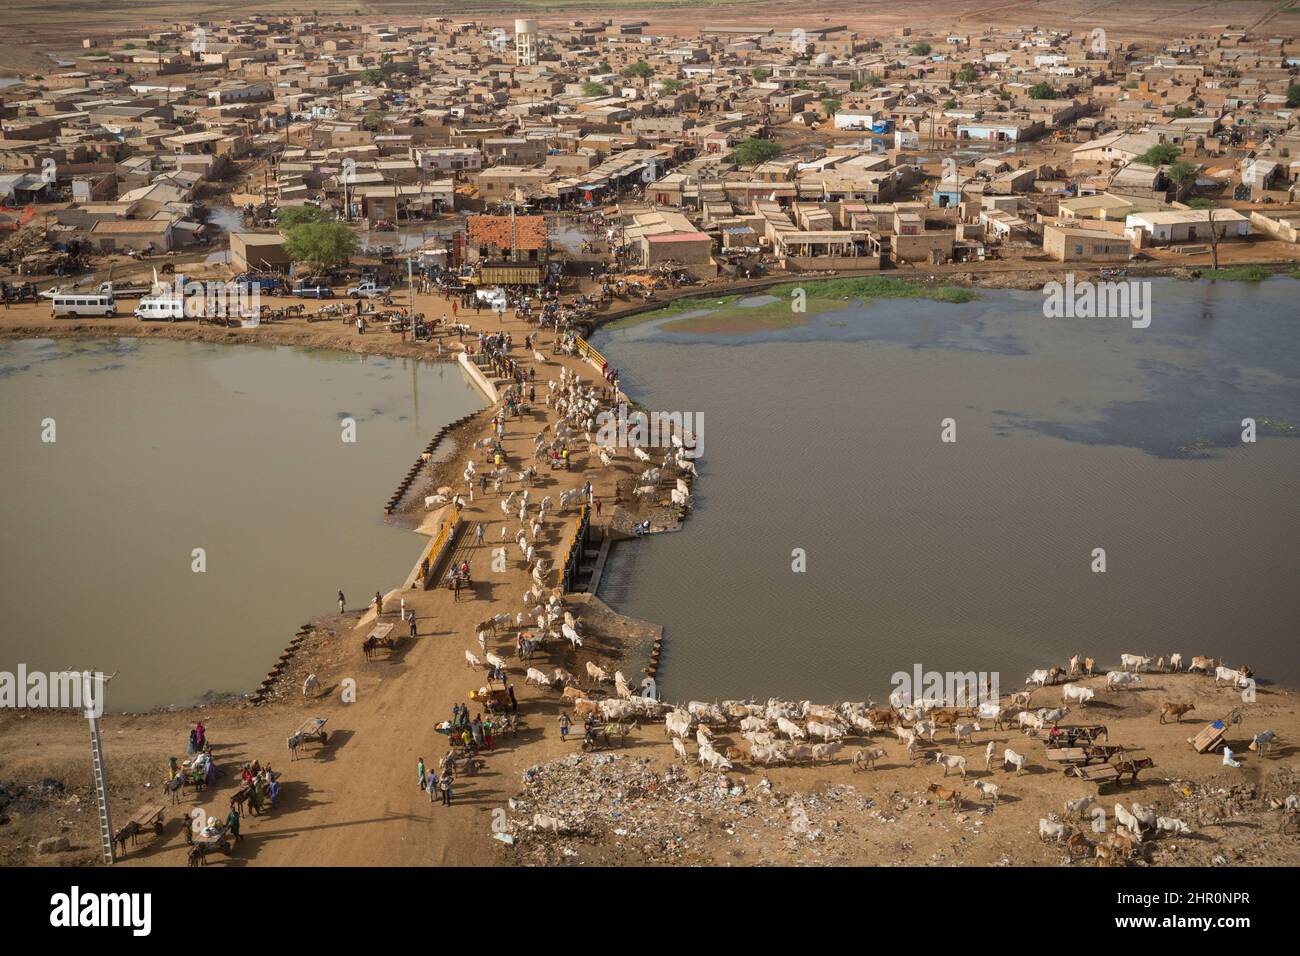 Le barriere alluvionali della città di Mboundoum lungo il fiume Senegal aiutano a regolare il flusso d'acqua ai canali di irrigazione in tutto il Delta del Senegal. Foto Stock